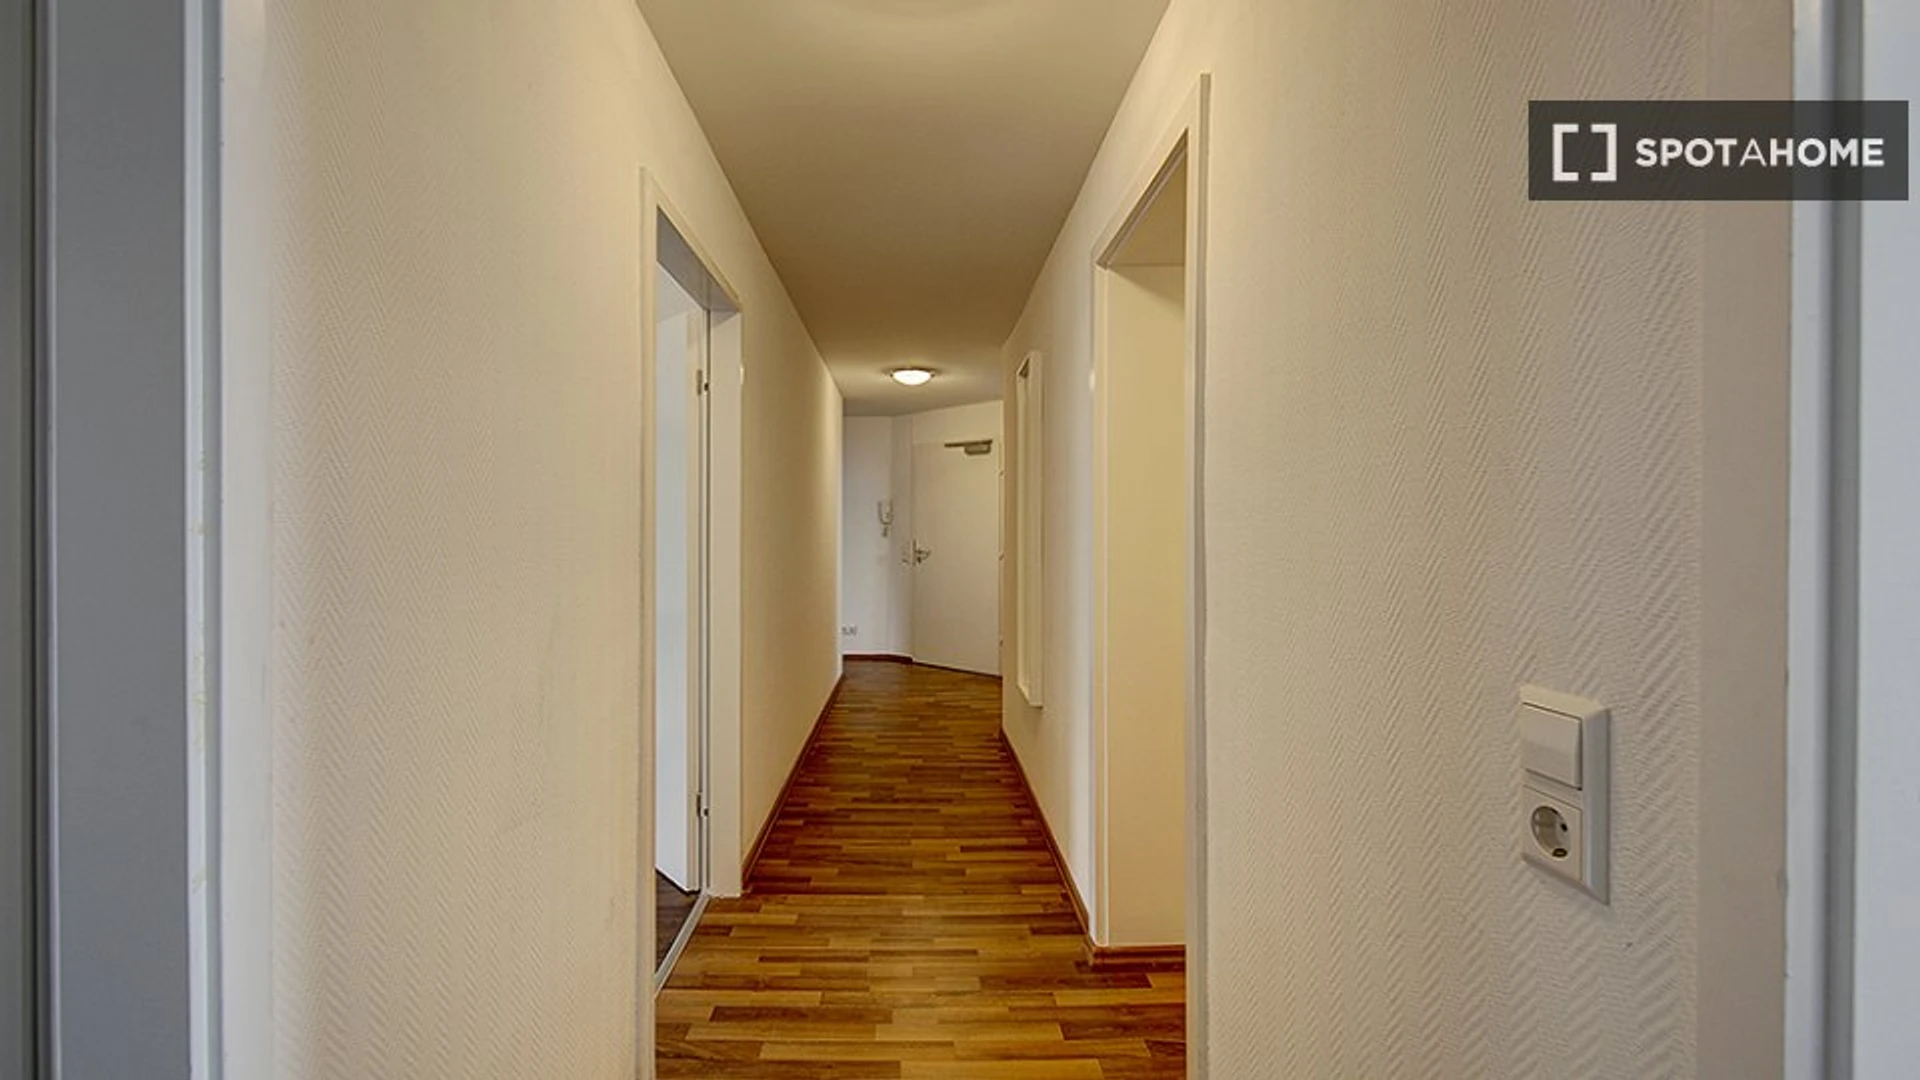 Stuttgart de çift kişilik yataklı kiralık oda